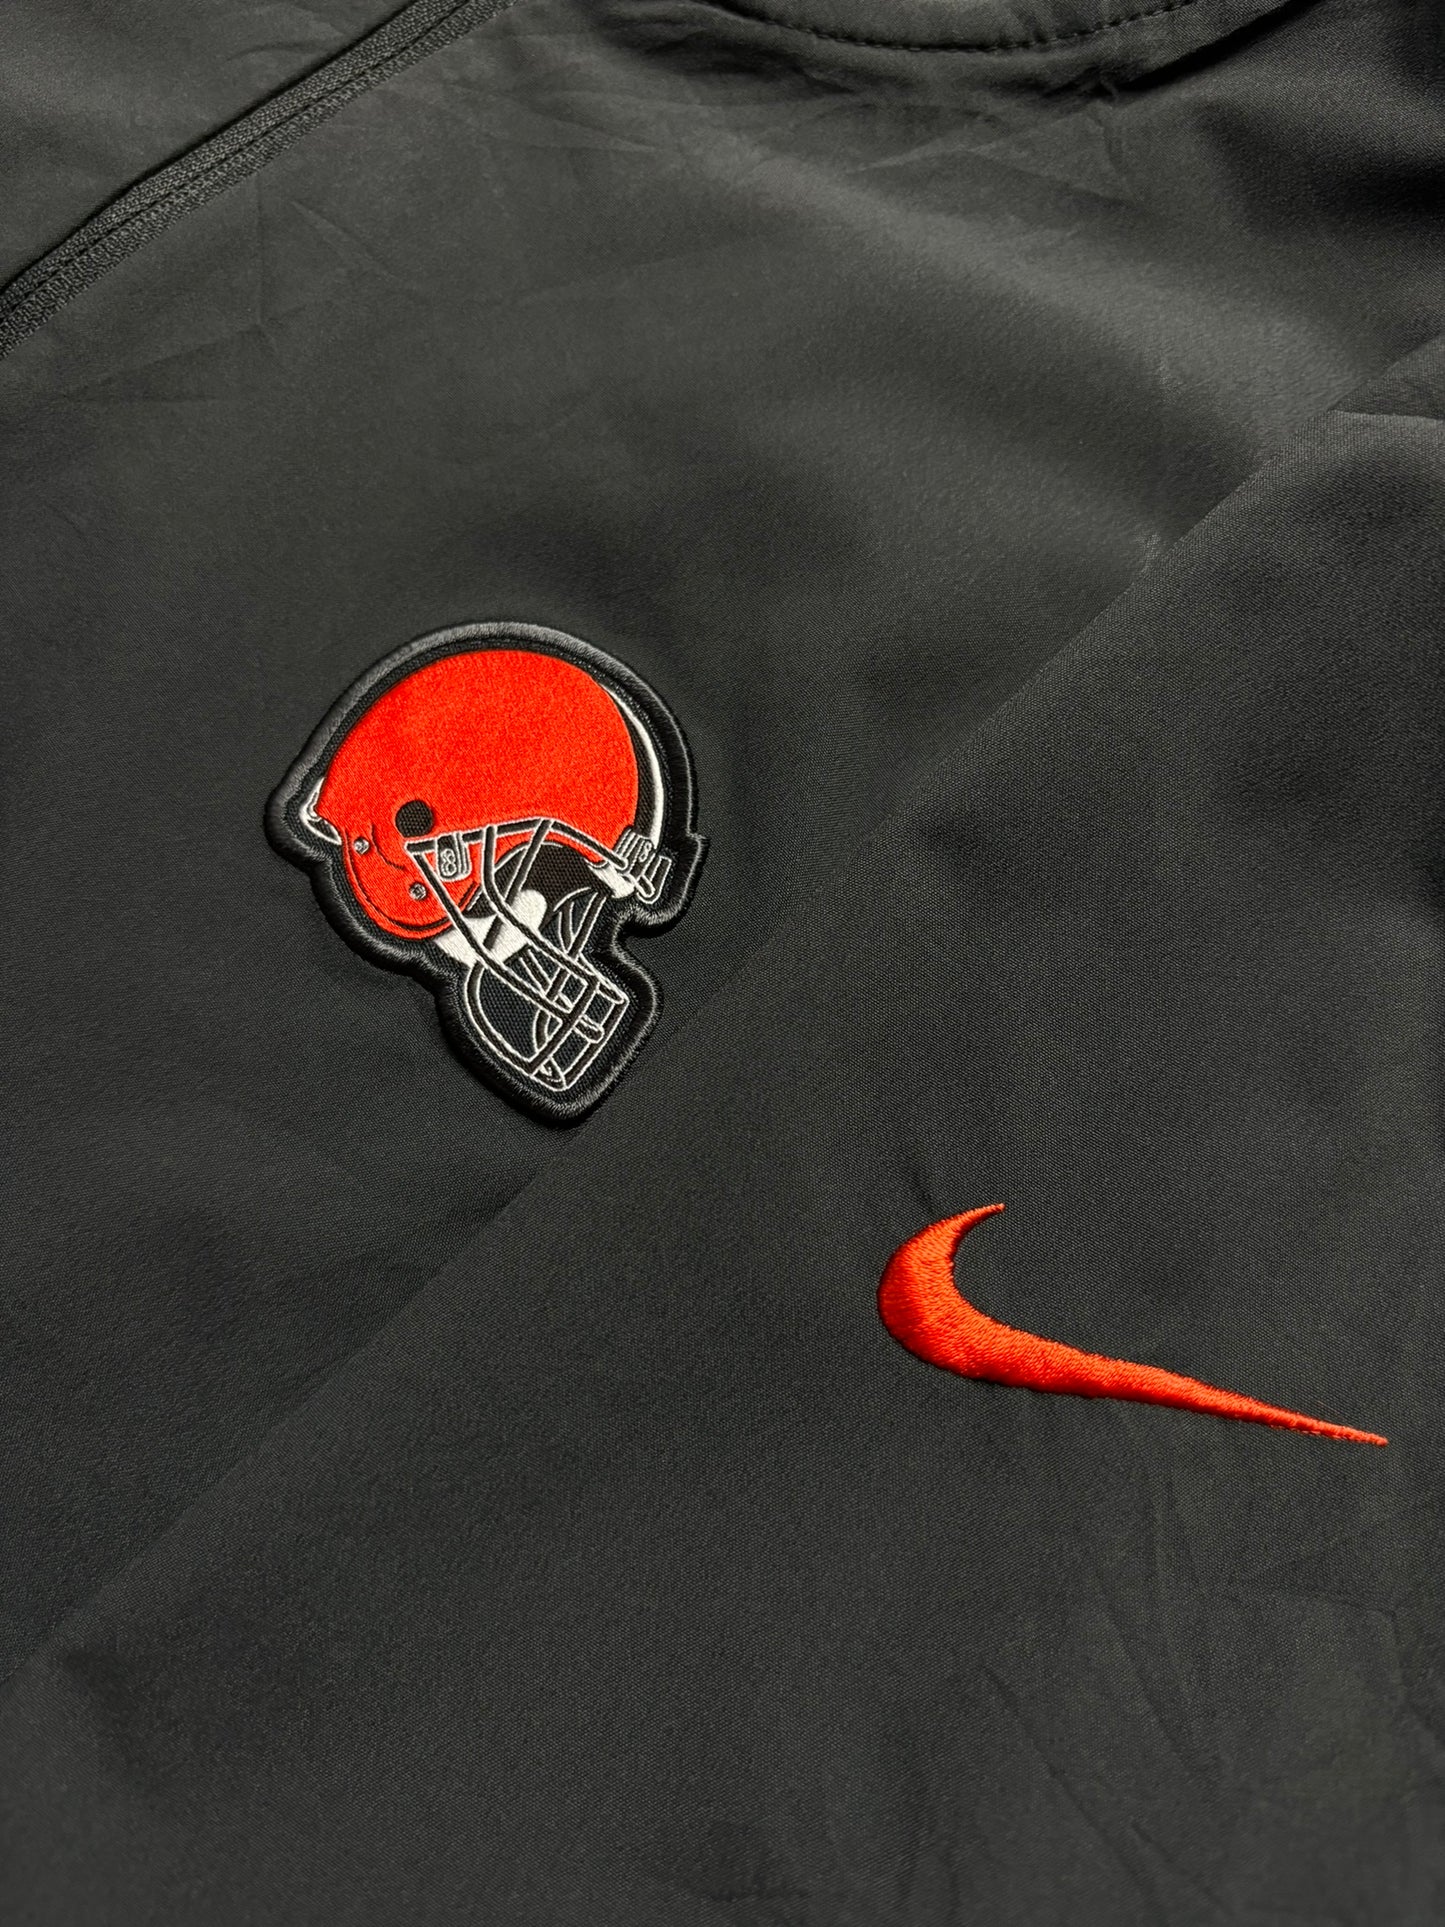 Camiseta nylon Nike X NFL Cleveland Browns oversize - Large